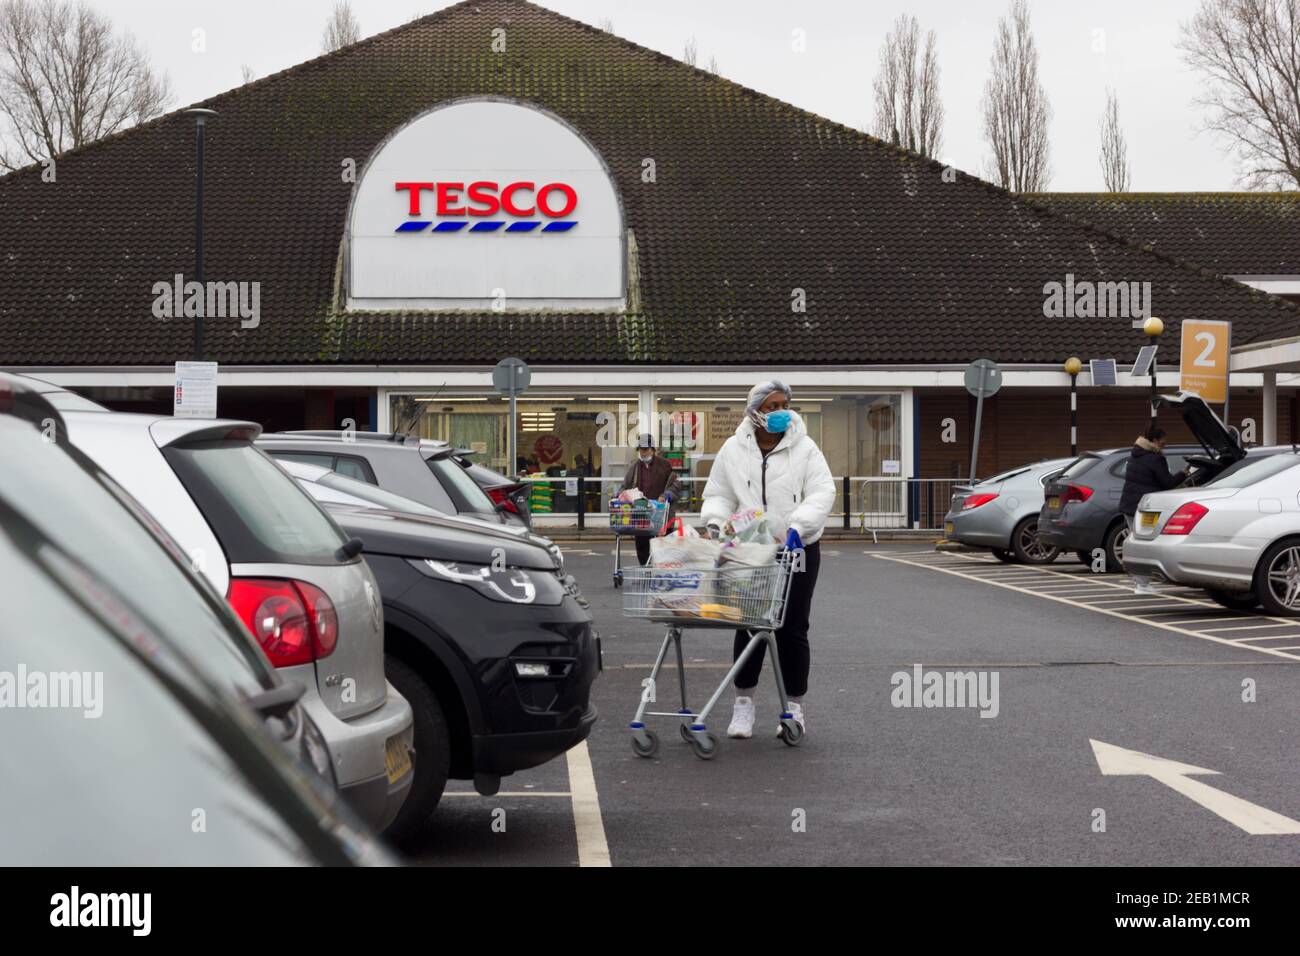 Femme shopper portant un masque de visage poussant chariot à son voiture dans le parking de supermarché Tesco, Kent Banque D'Images